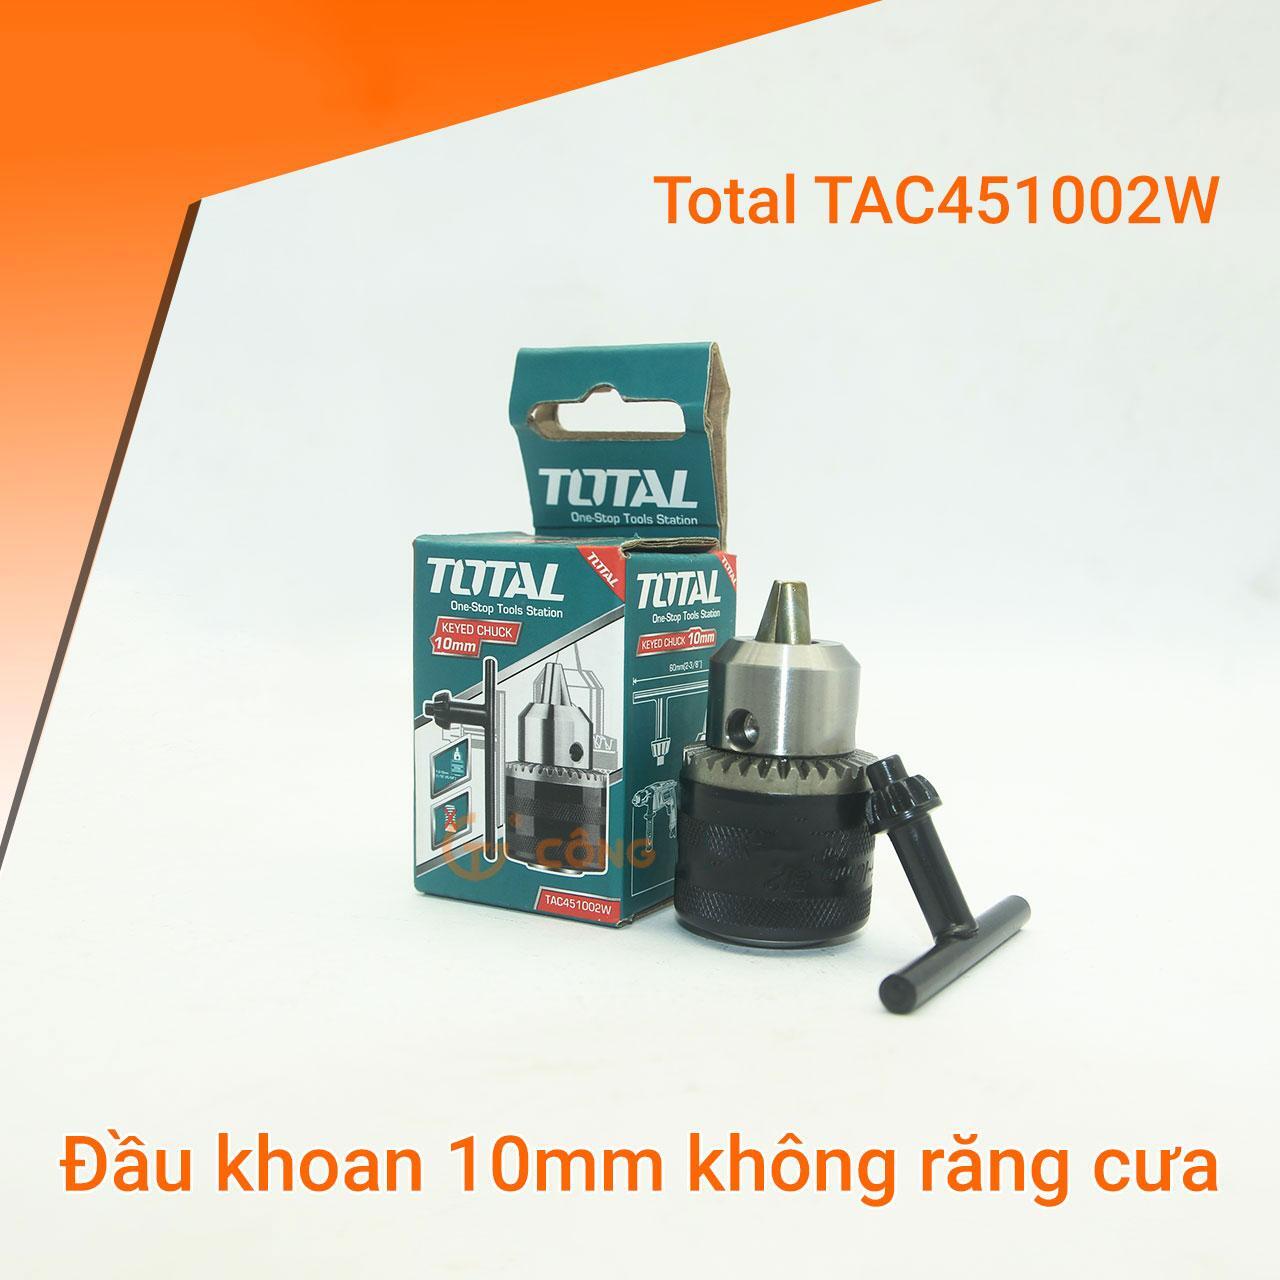 Đầu khoan 10mm TOTAL TAC451002W (không răng cưa)